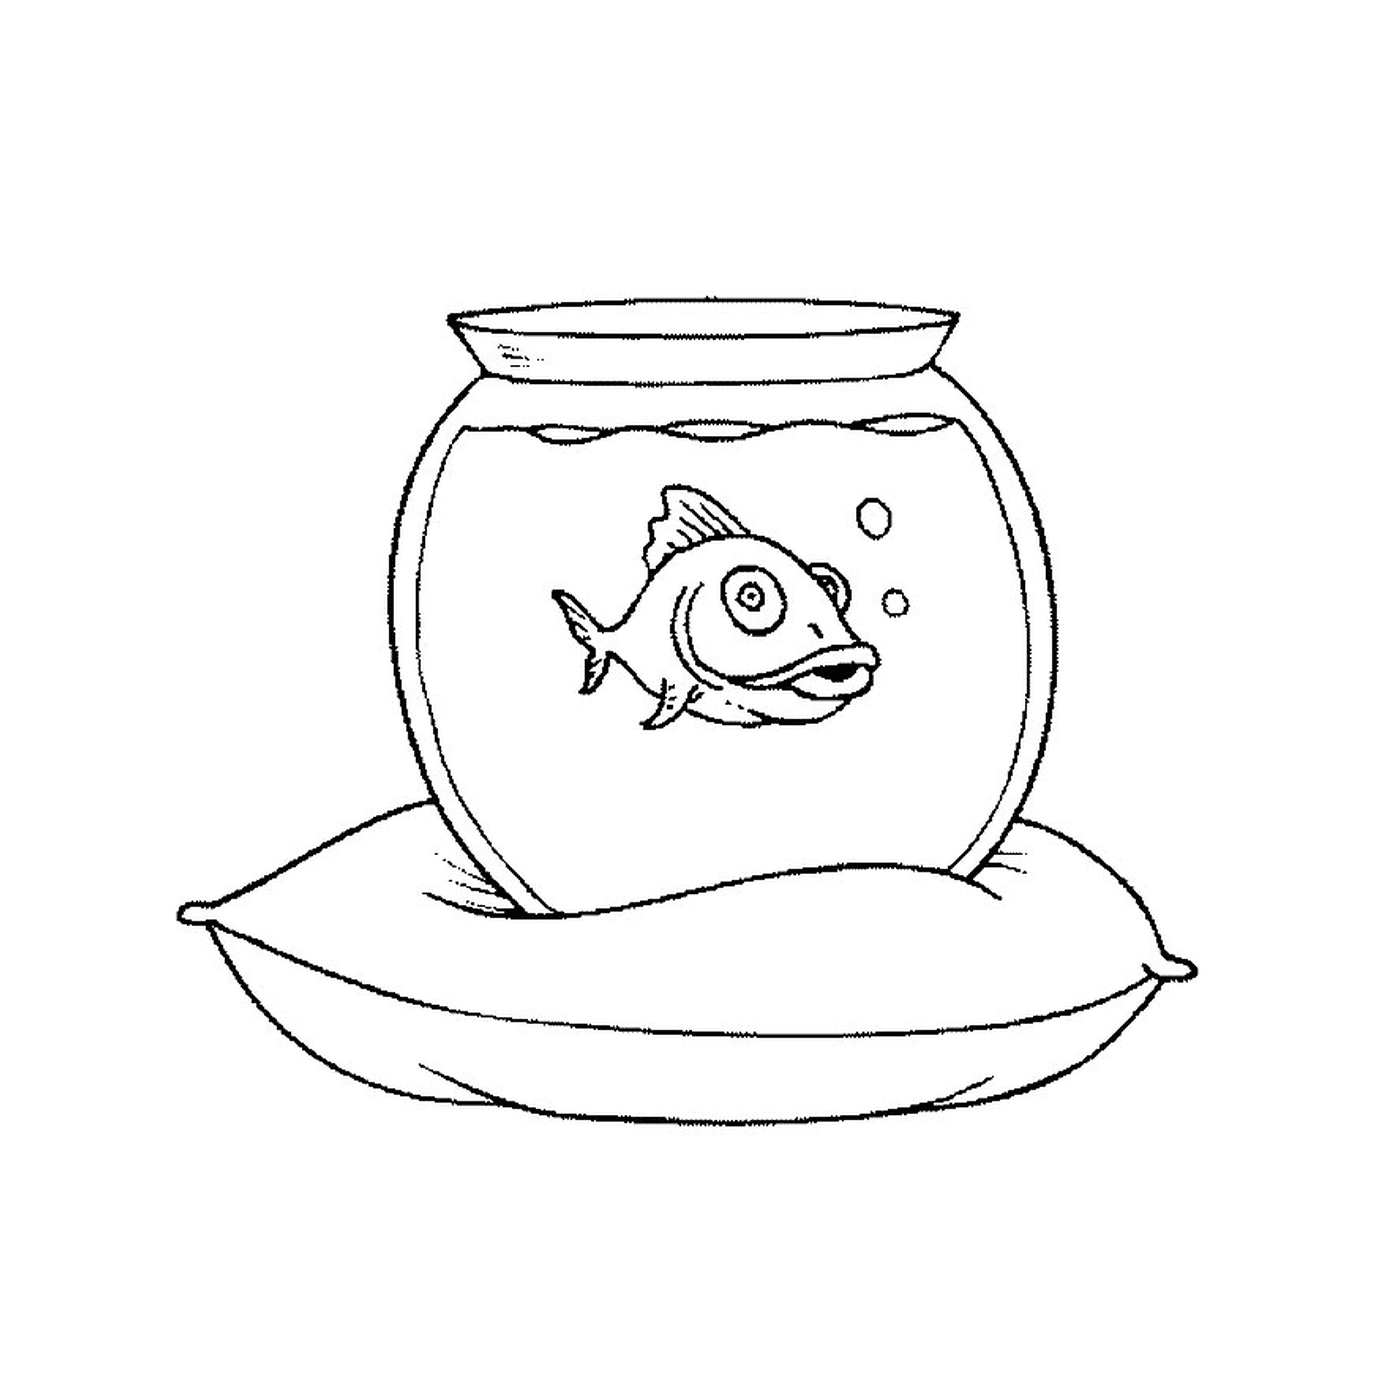  Fish in an aquarium 